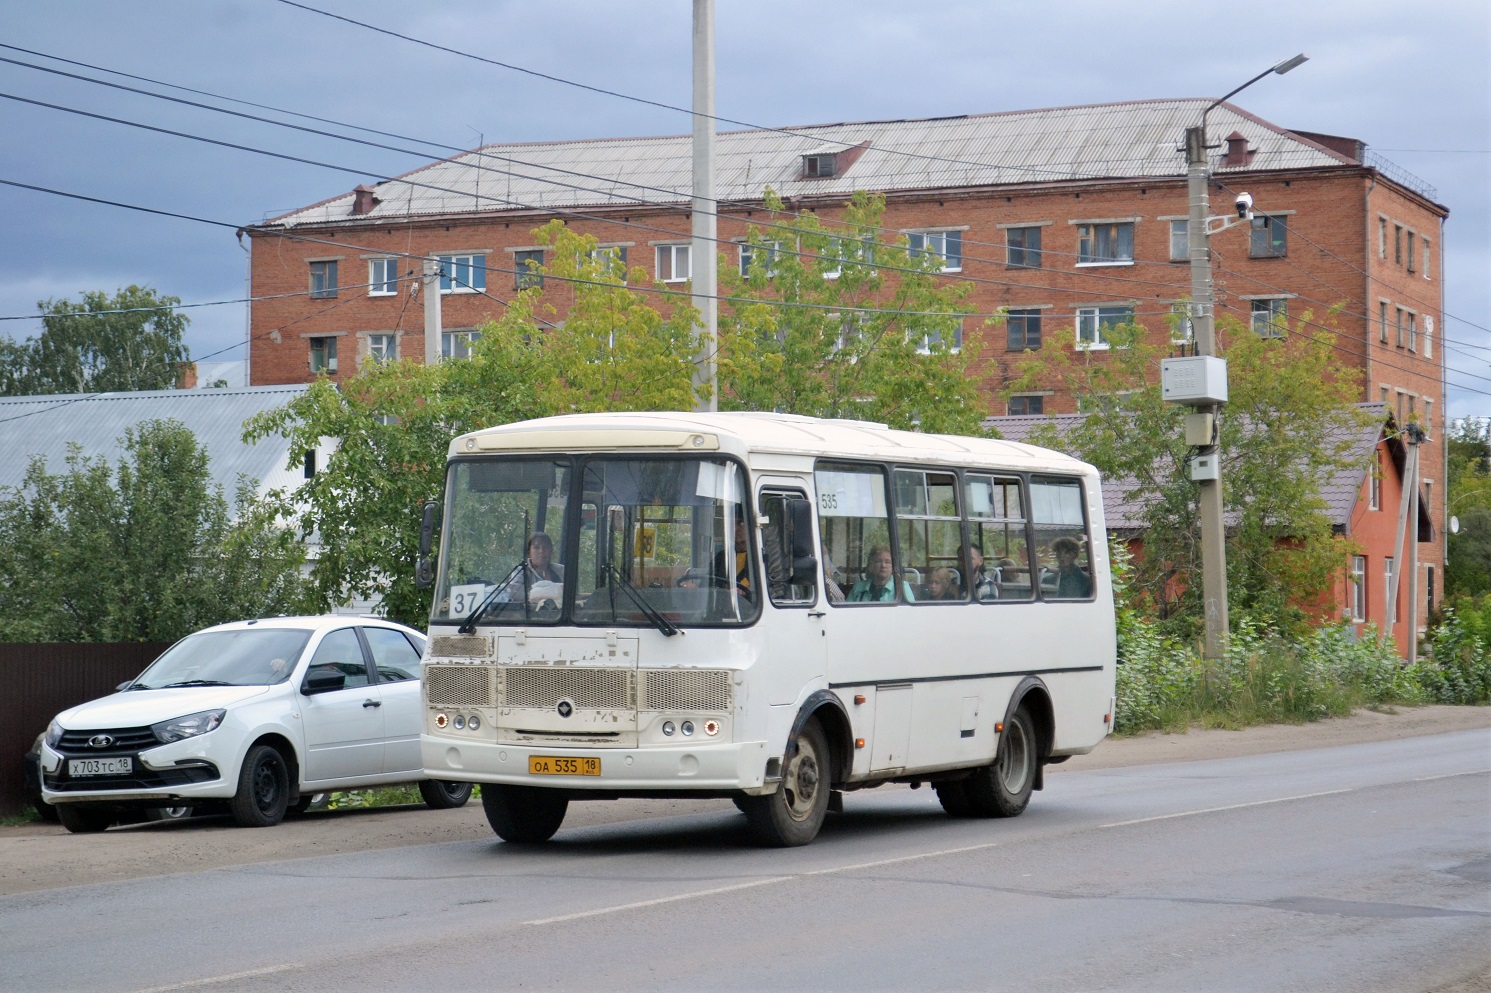 Sarapul, ПАЗ-320540-22 (AR) No. ОА 535 18